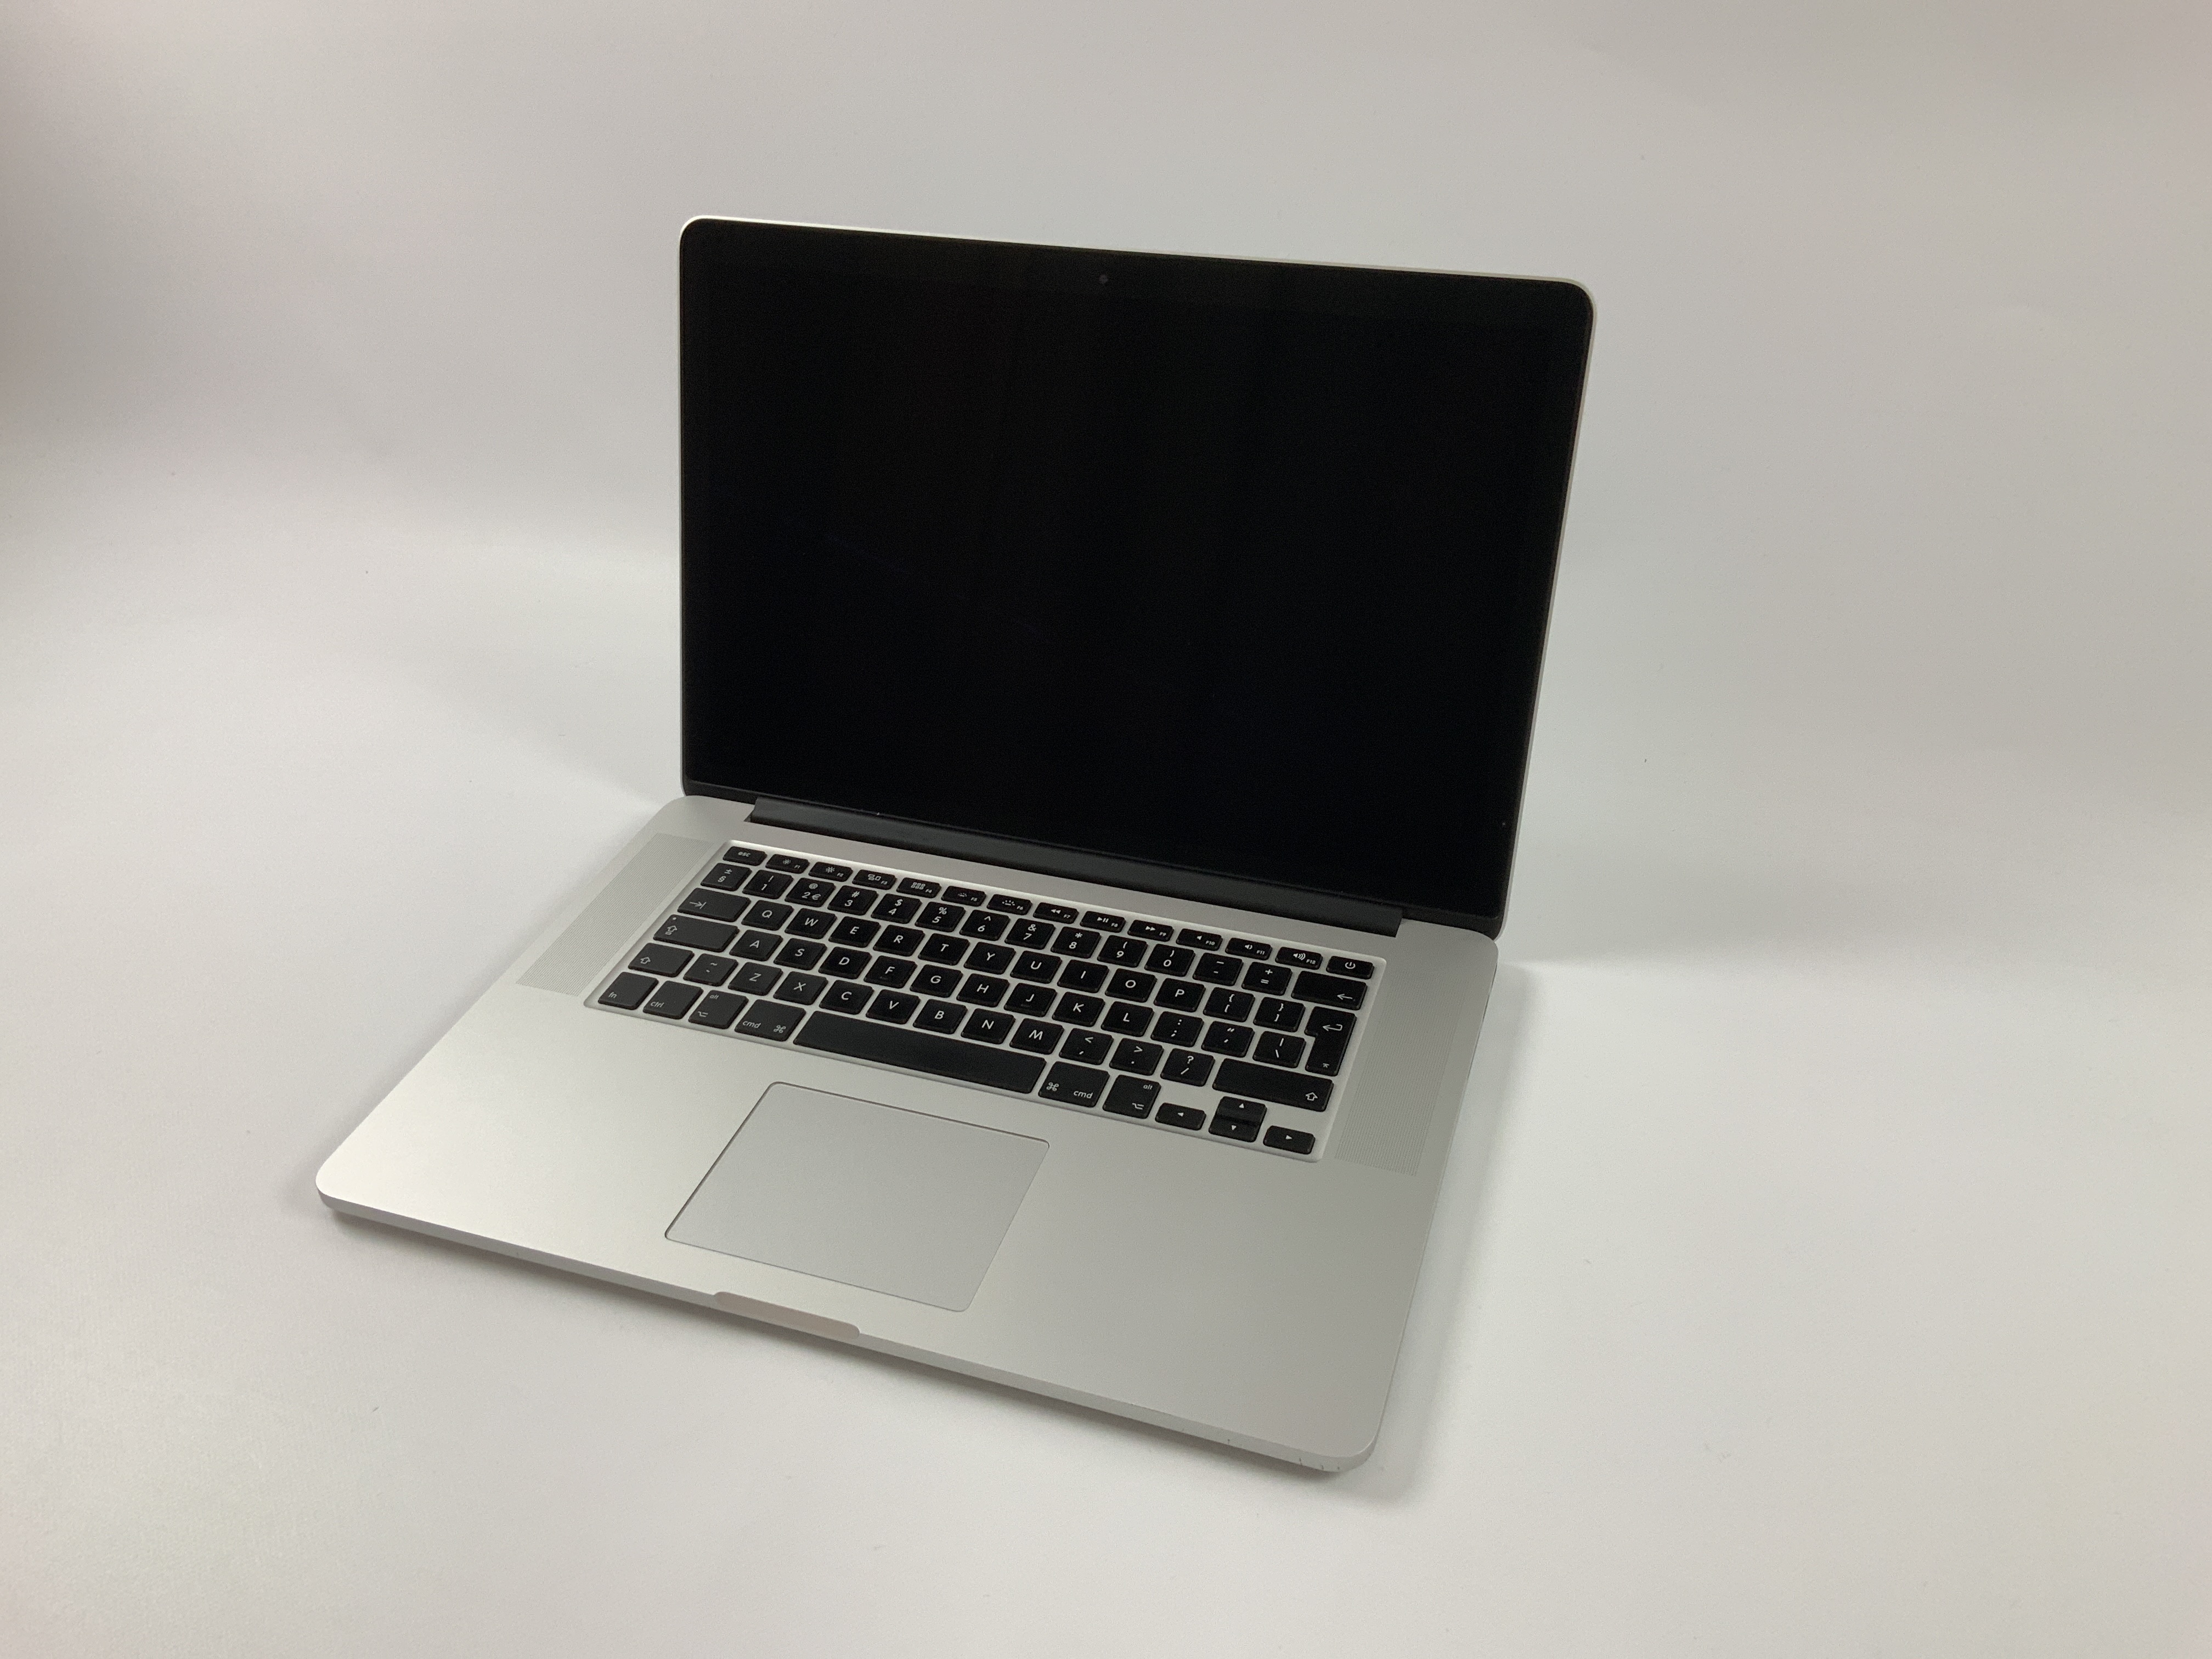 MacBook Pro Retina 15" Mid 2015 (Intel Quad-Core i7 2.5 GHz 16 GB RAM 256 GB SSD), Intel Quad-Core i7 2.5 GHz, 16 GB RAM, 256 GB SSD, Bild 1